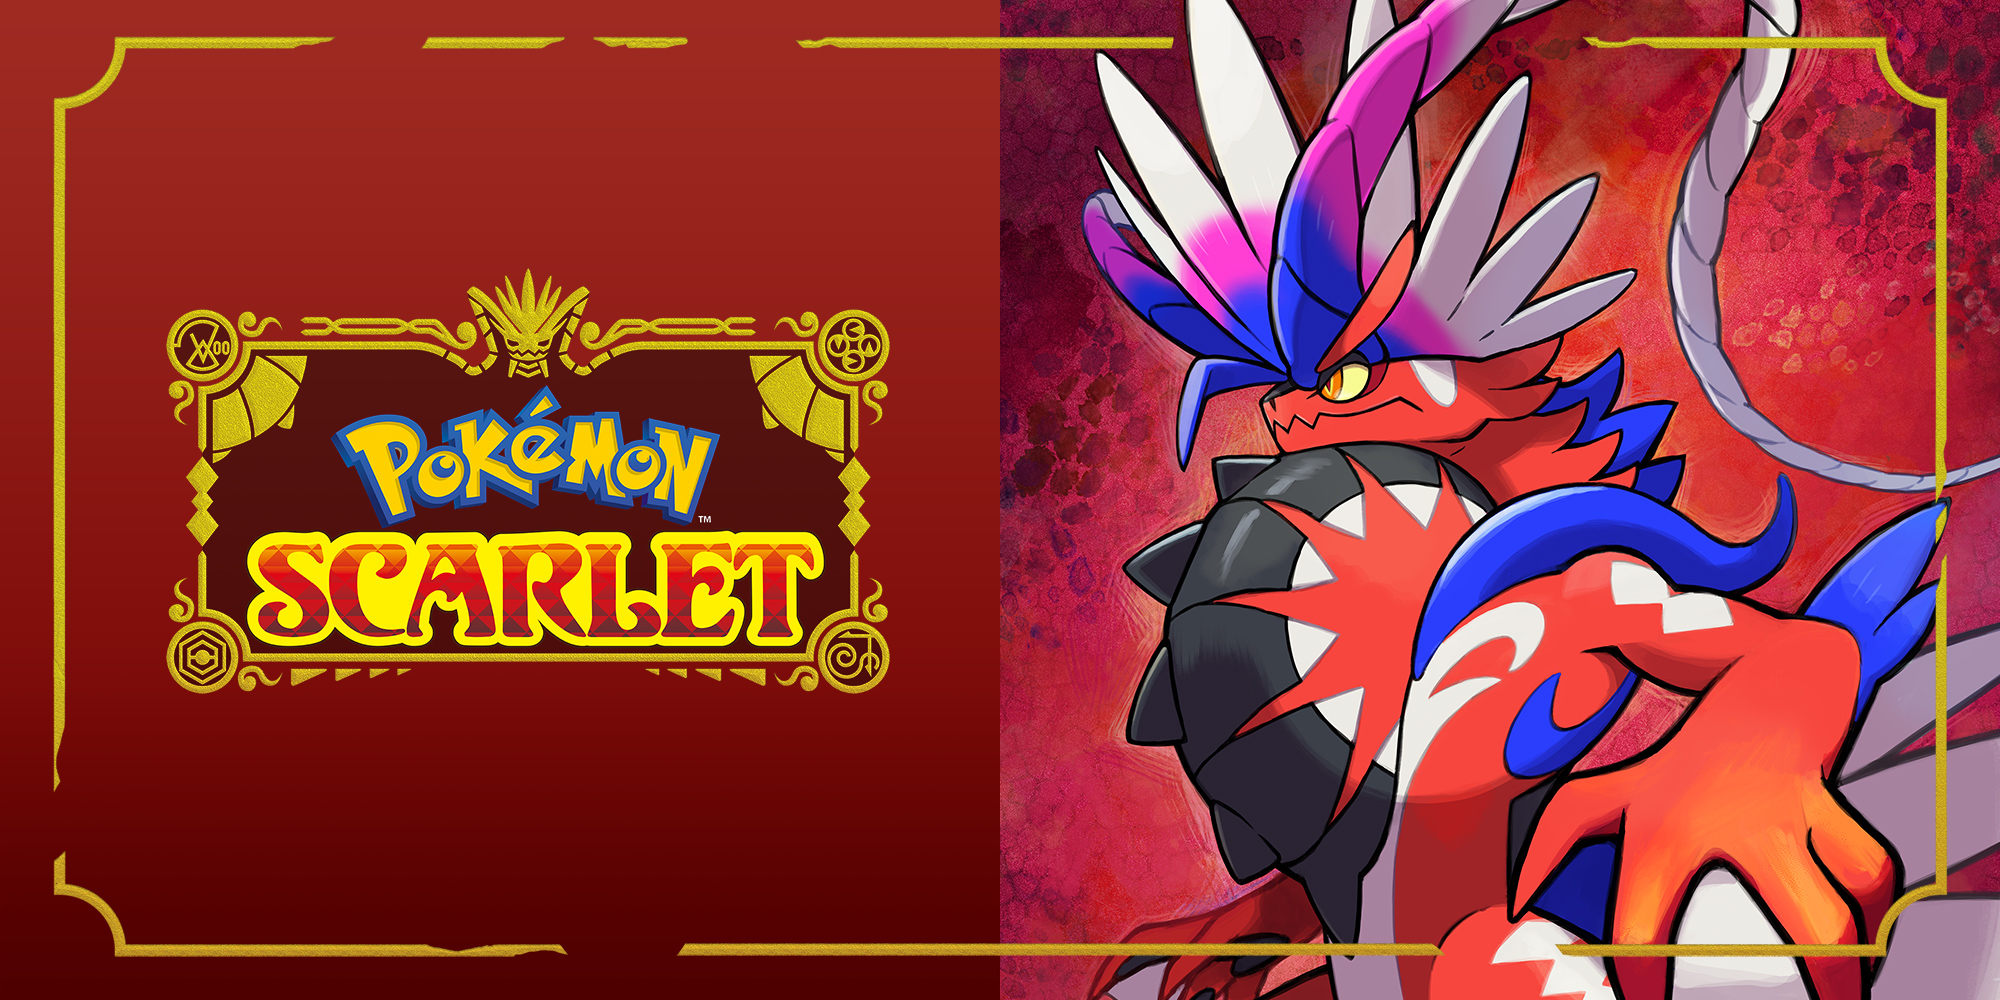 Guia: Como mudar o Tipo Tera do Pokémon em Pokémon Scarlet e